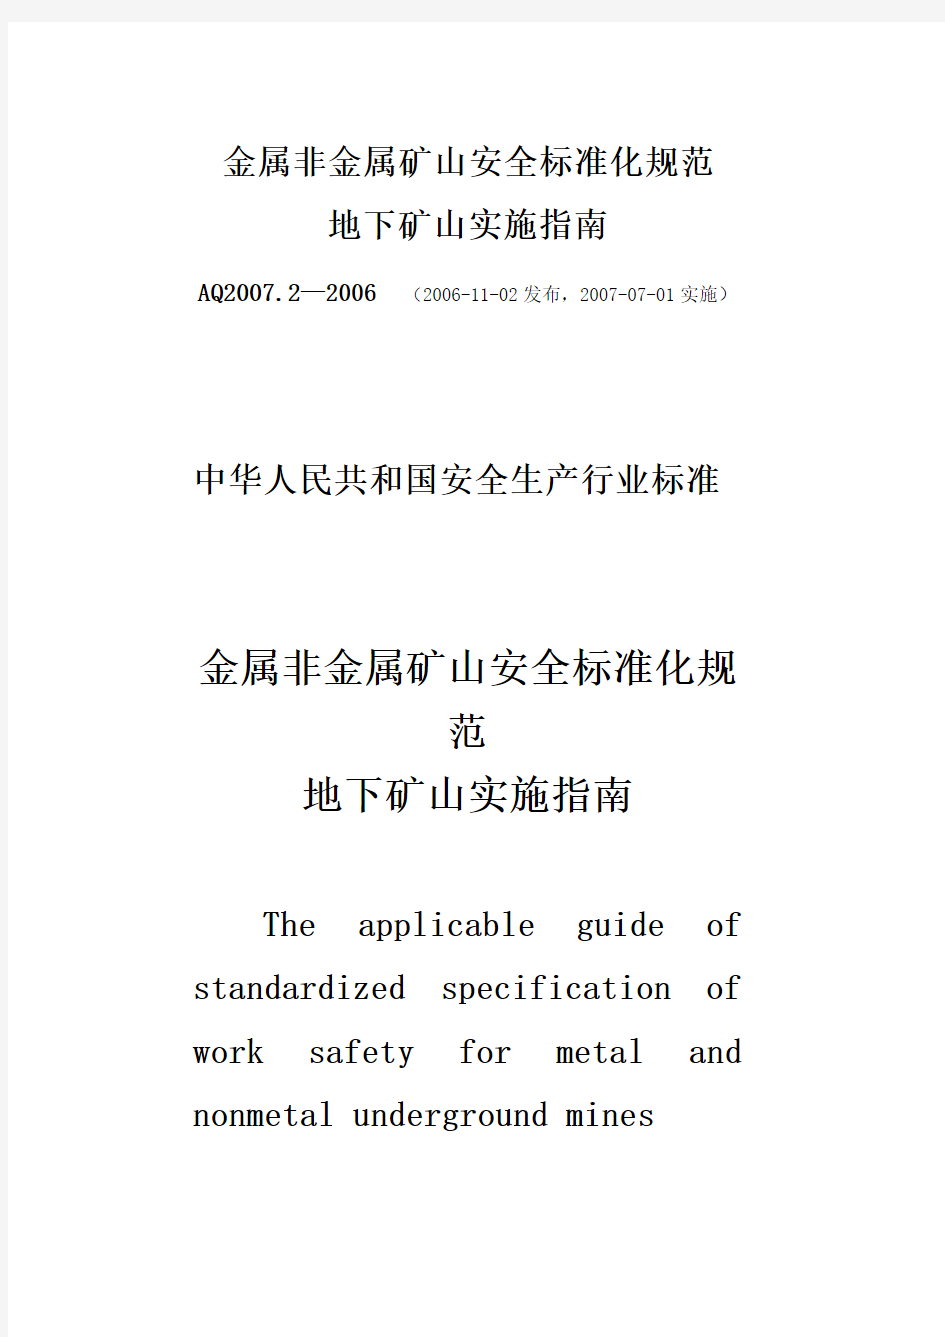 金属非金属矿山安全标准化规范地下矿山实施指南AQ2007